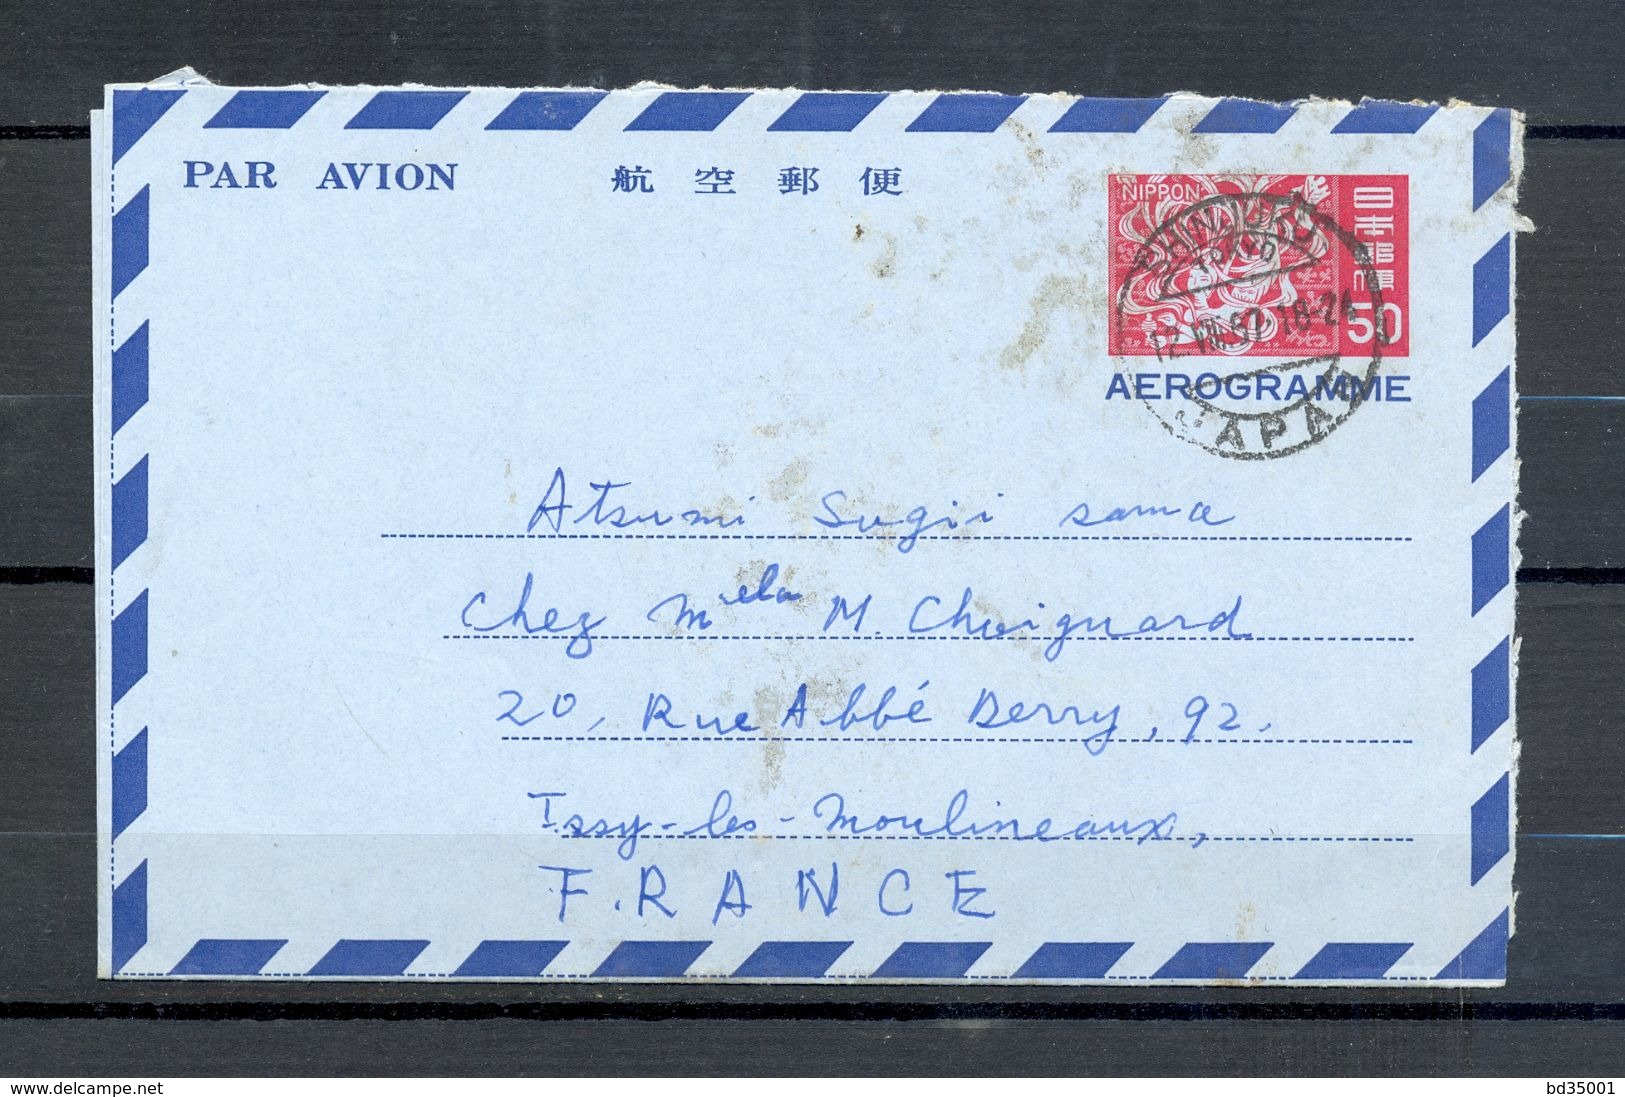 AEROGRAMME AIR LETTER PAR AVION - JAPON JAPAN - Tokyo Vers Issy Les Moulineaux - 1967 - (5) - Aerogrammi